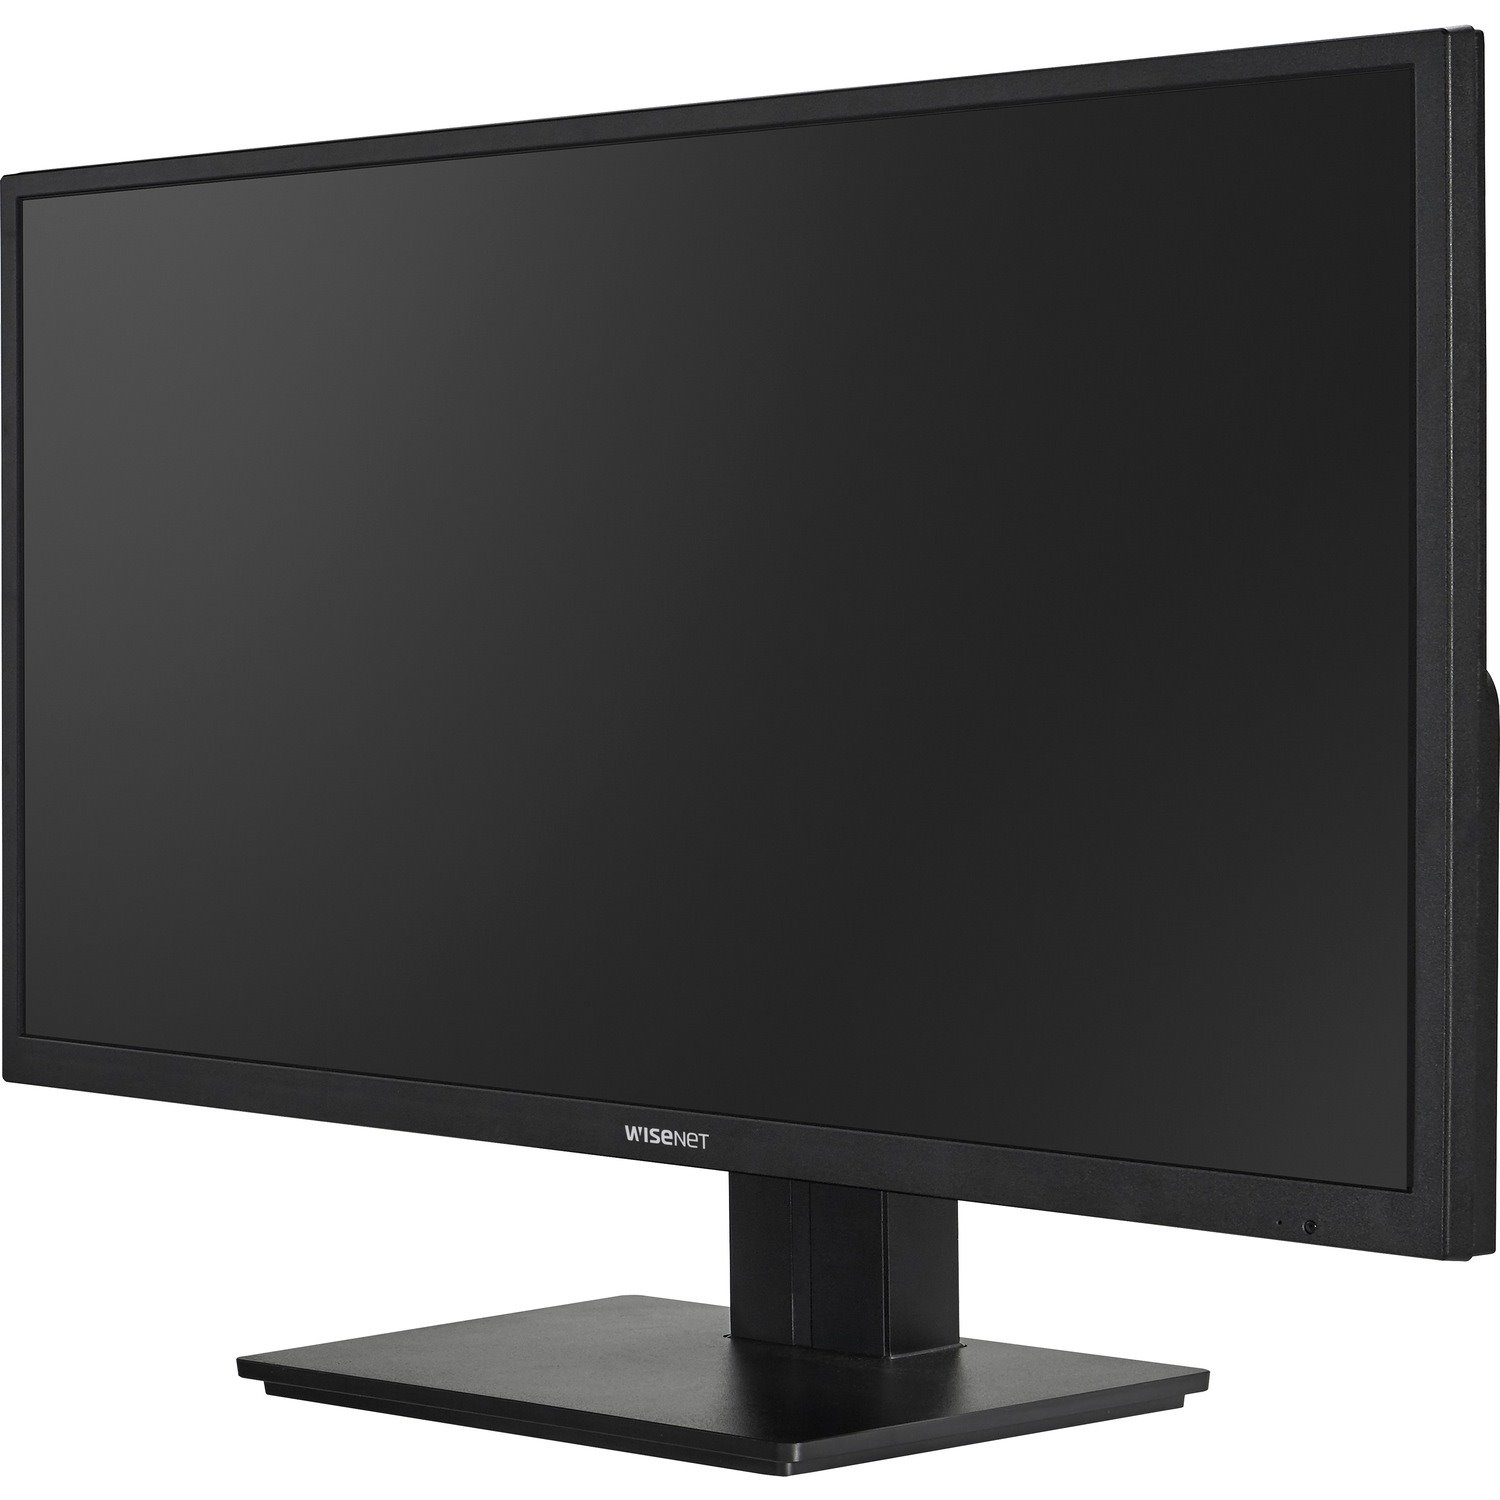 Wisenet SMT-3234 31.5" Full HD LED LCD Monitor - 16:9 - Black